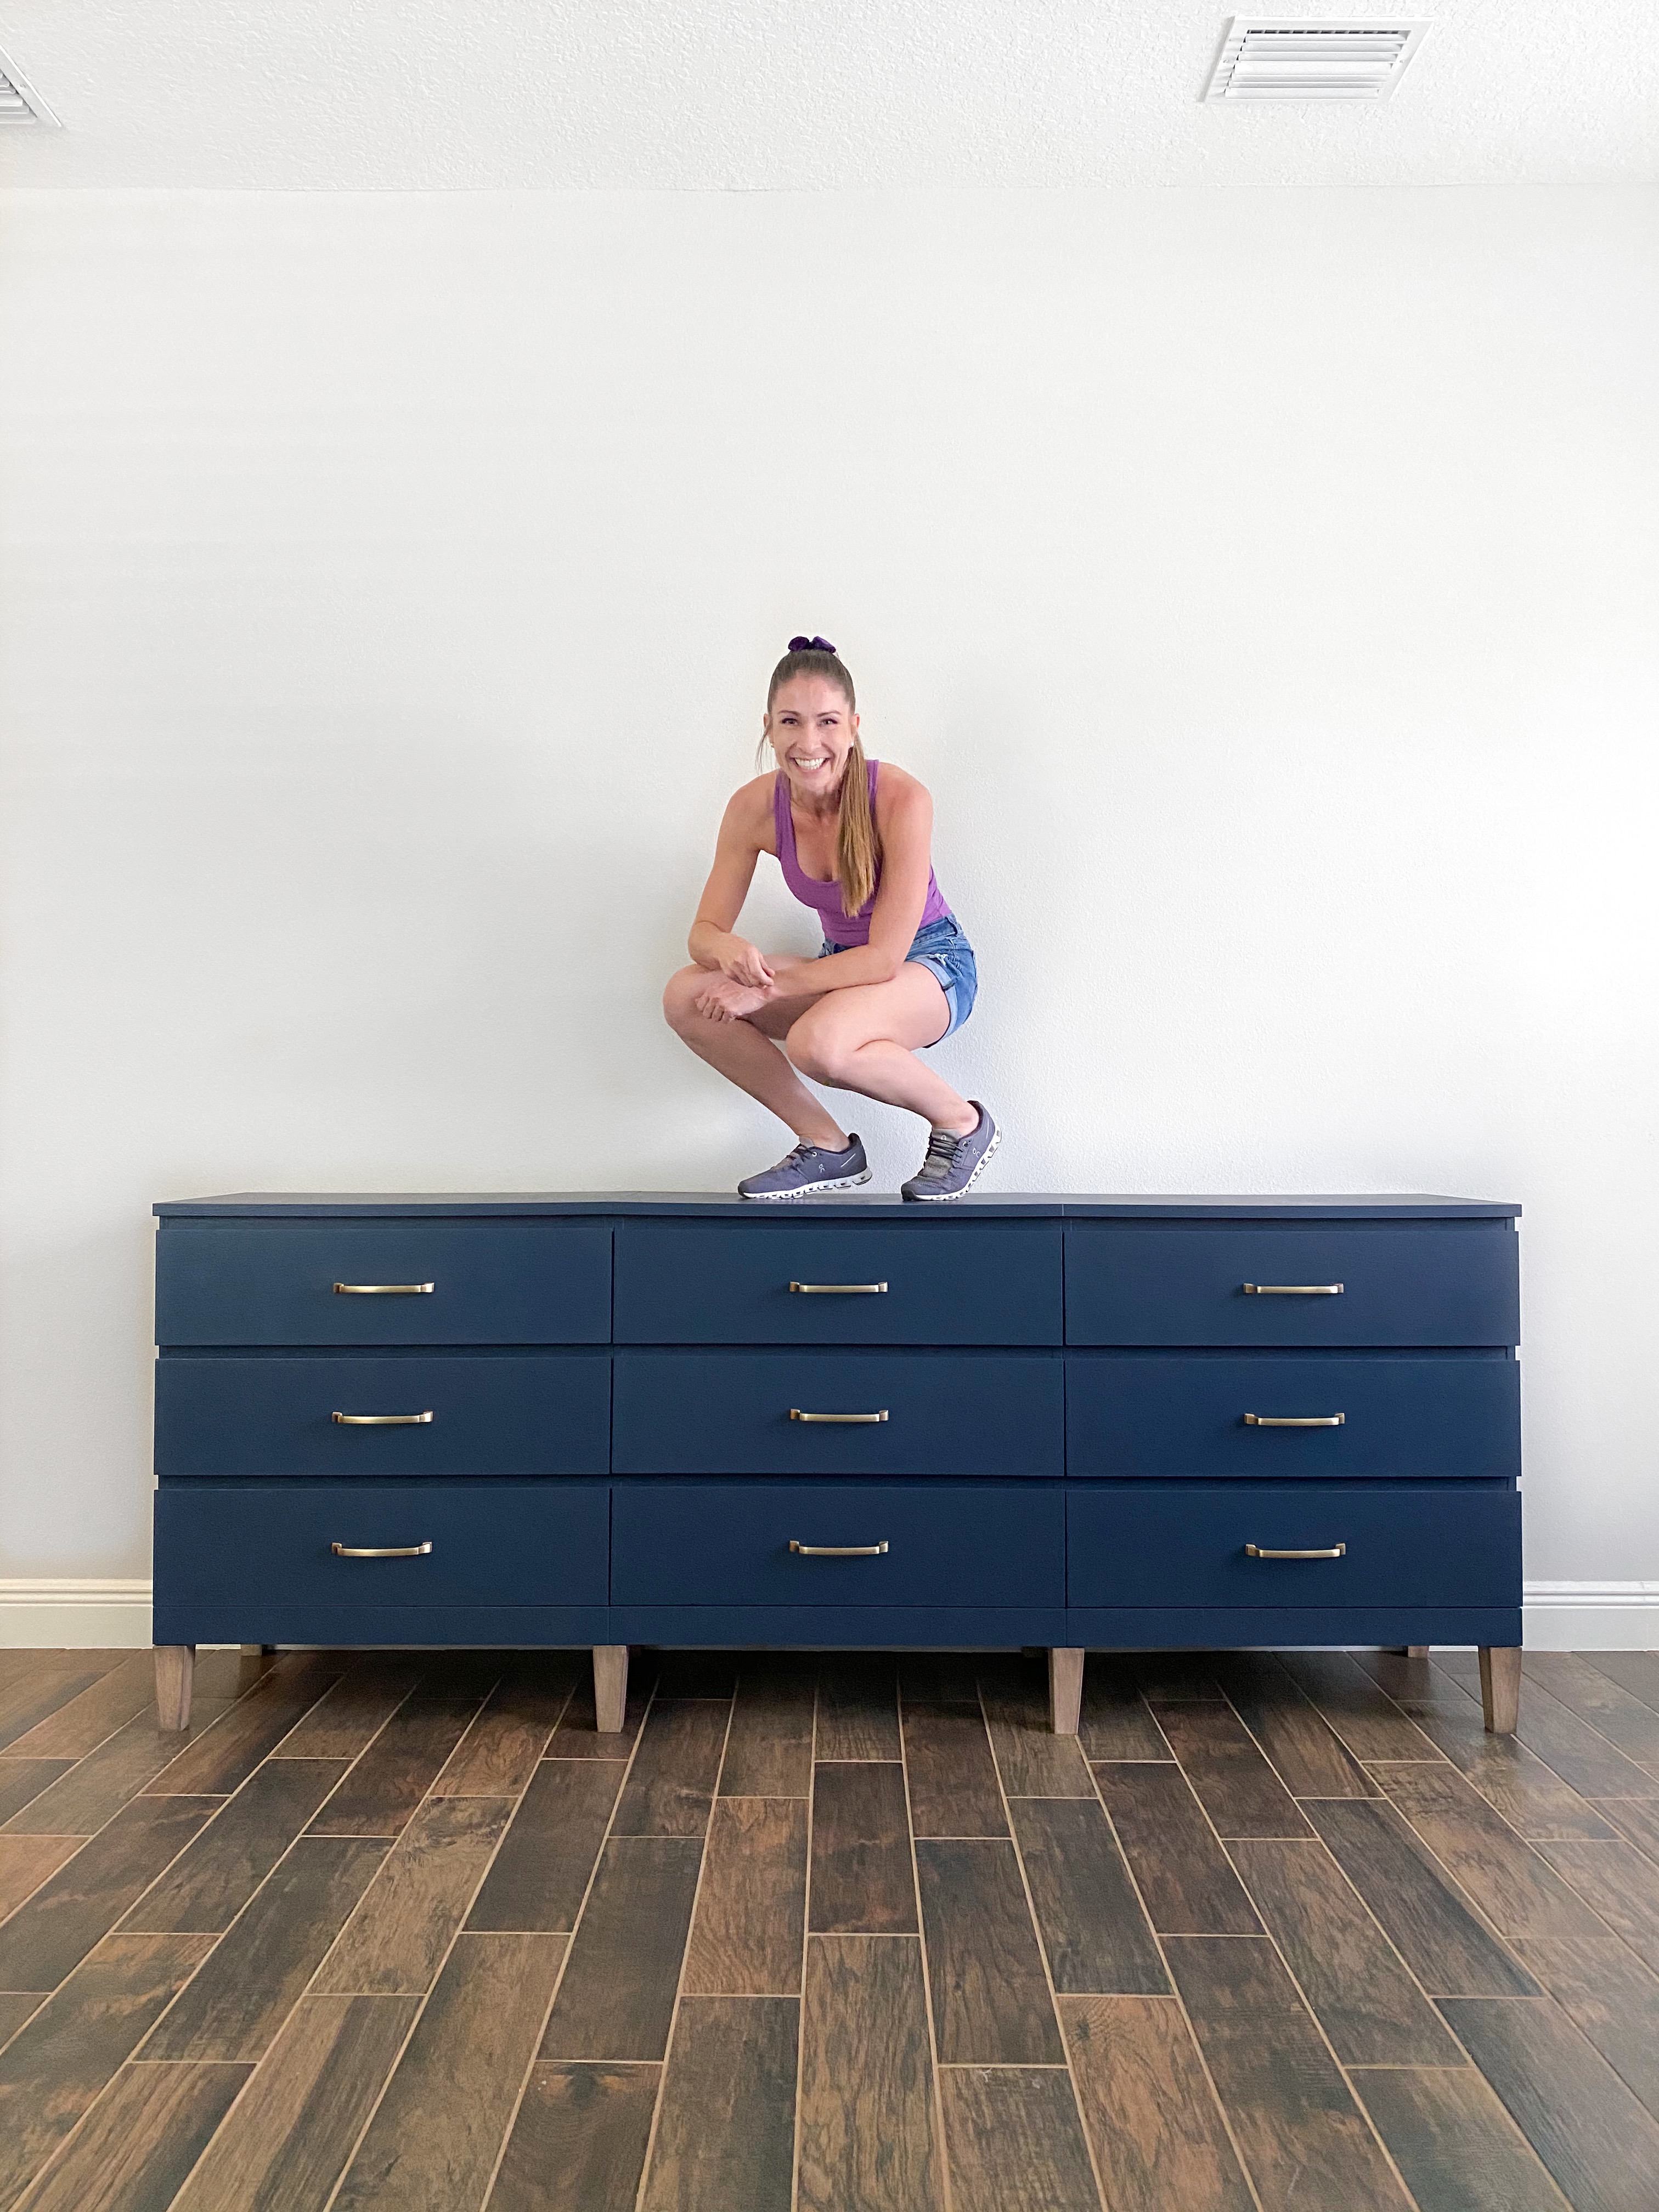 Echt Componeren alledaags How to Create A DIY Dresser | IKEA Malm Dresser Hack